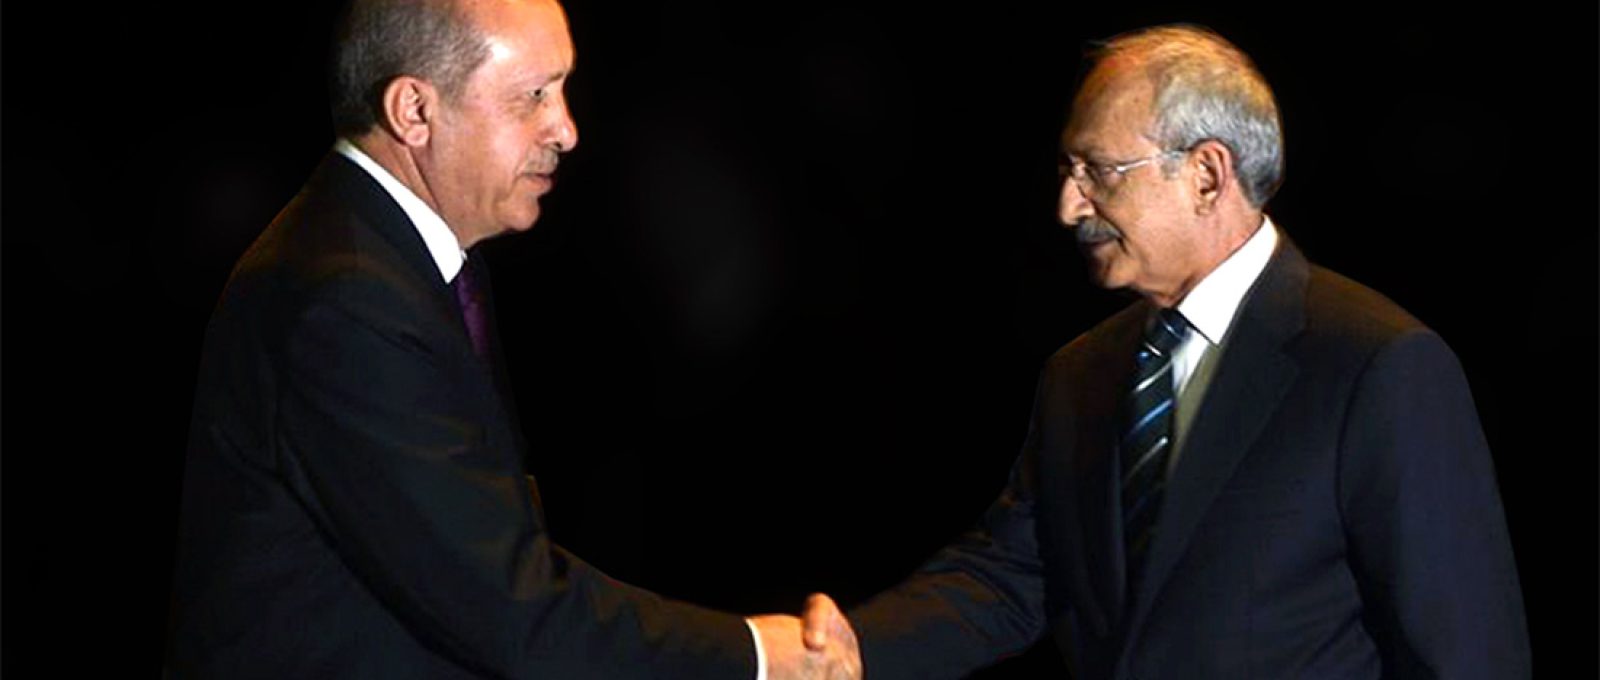 O atual presidente da Turquia, Recep Tayyip Erdogan, e o candidato Kemal Kilicdaroglu, cumprimentam-se durante evento em abril de 2015 (Erhan Elaldi/Agência Anadolu).